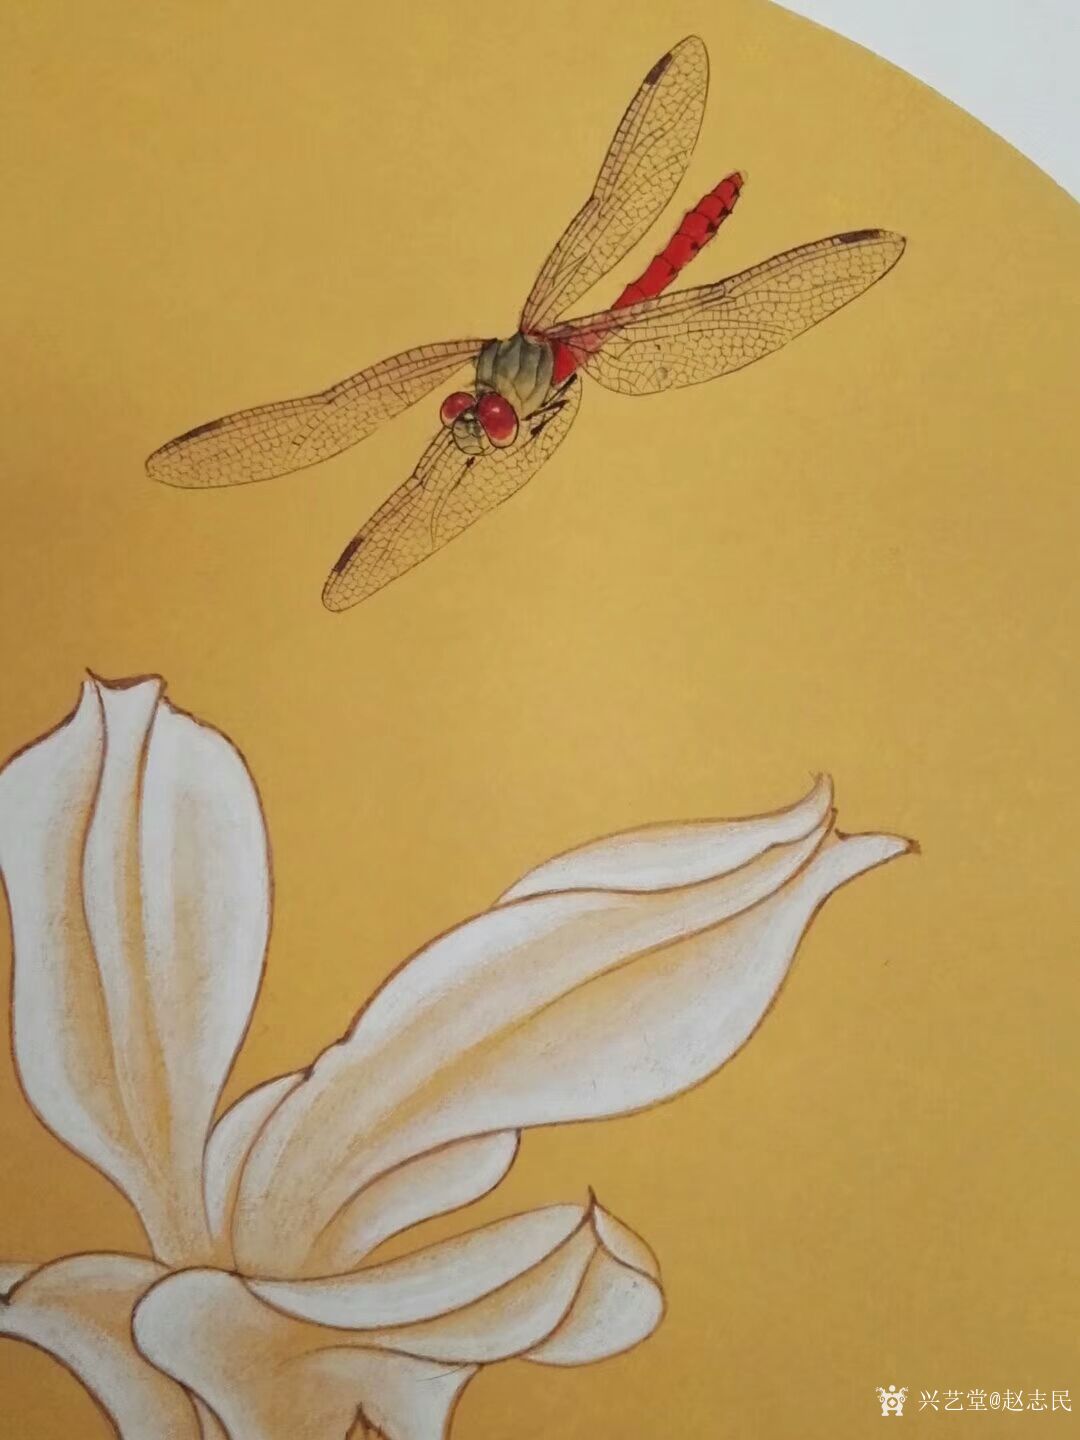 赵志民日记:工笔画小动物《蜻蜓飞上玉搔头》尺寸（33.33厘米），新作尚_兴艺堂